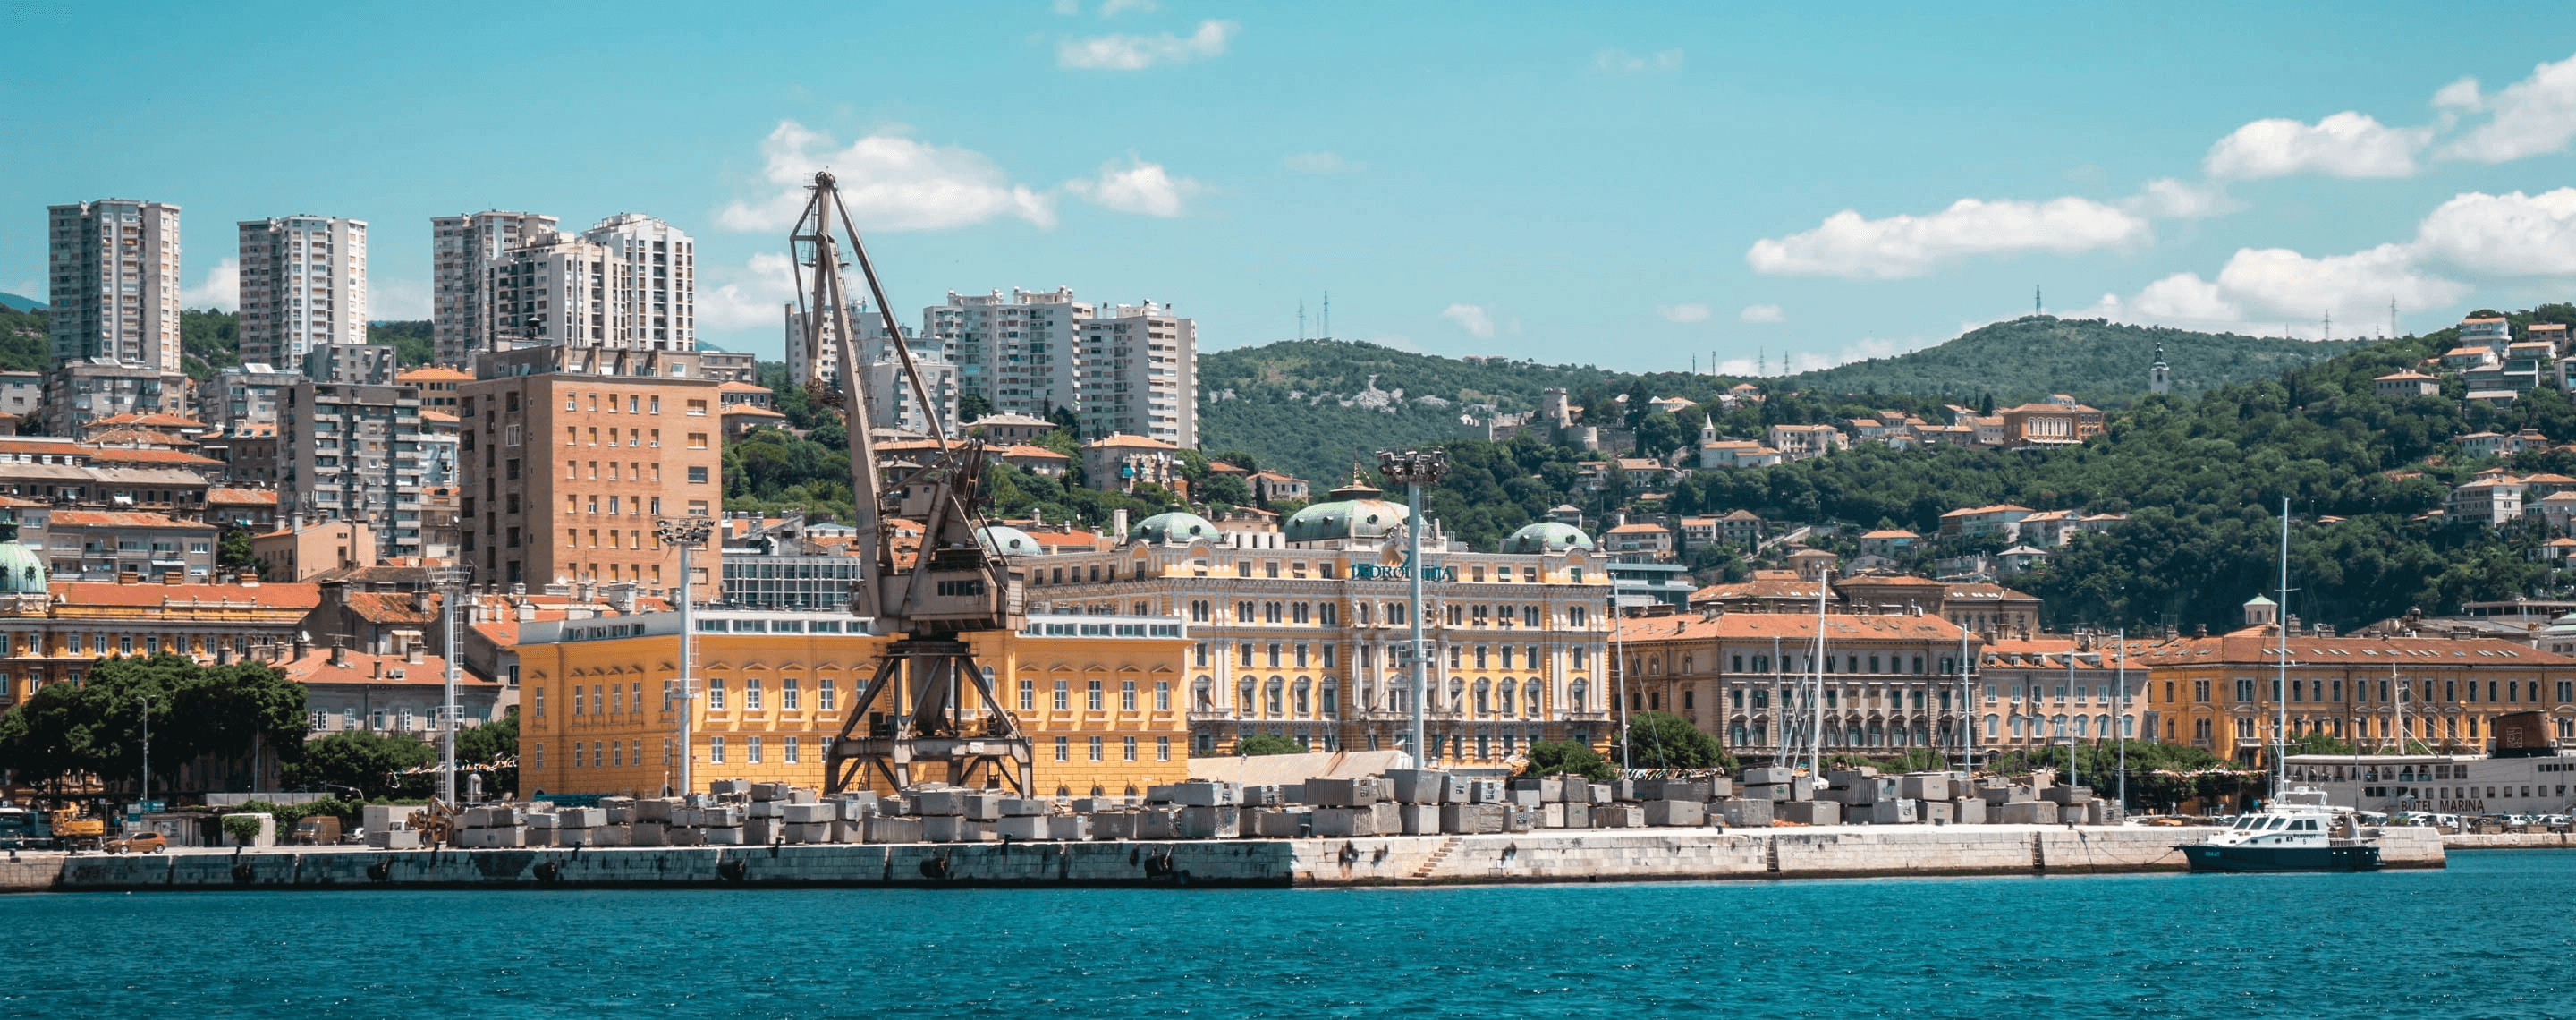 Blick auf den Hafen von Rijeka, Kroatien